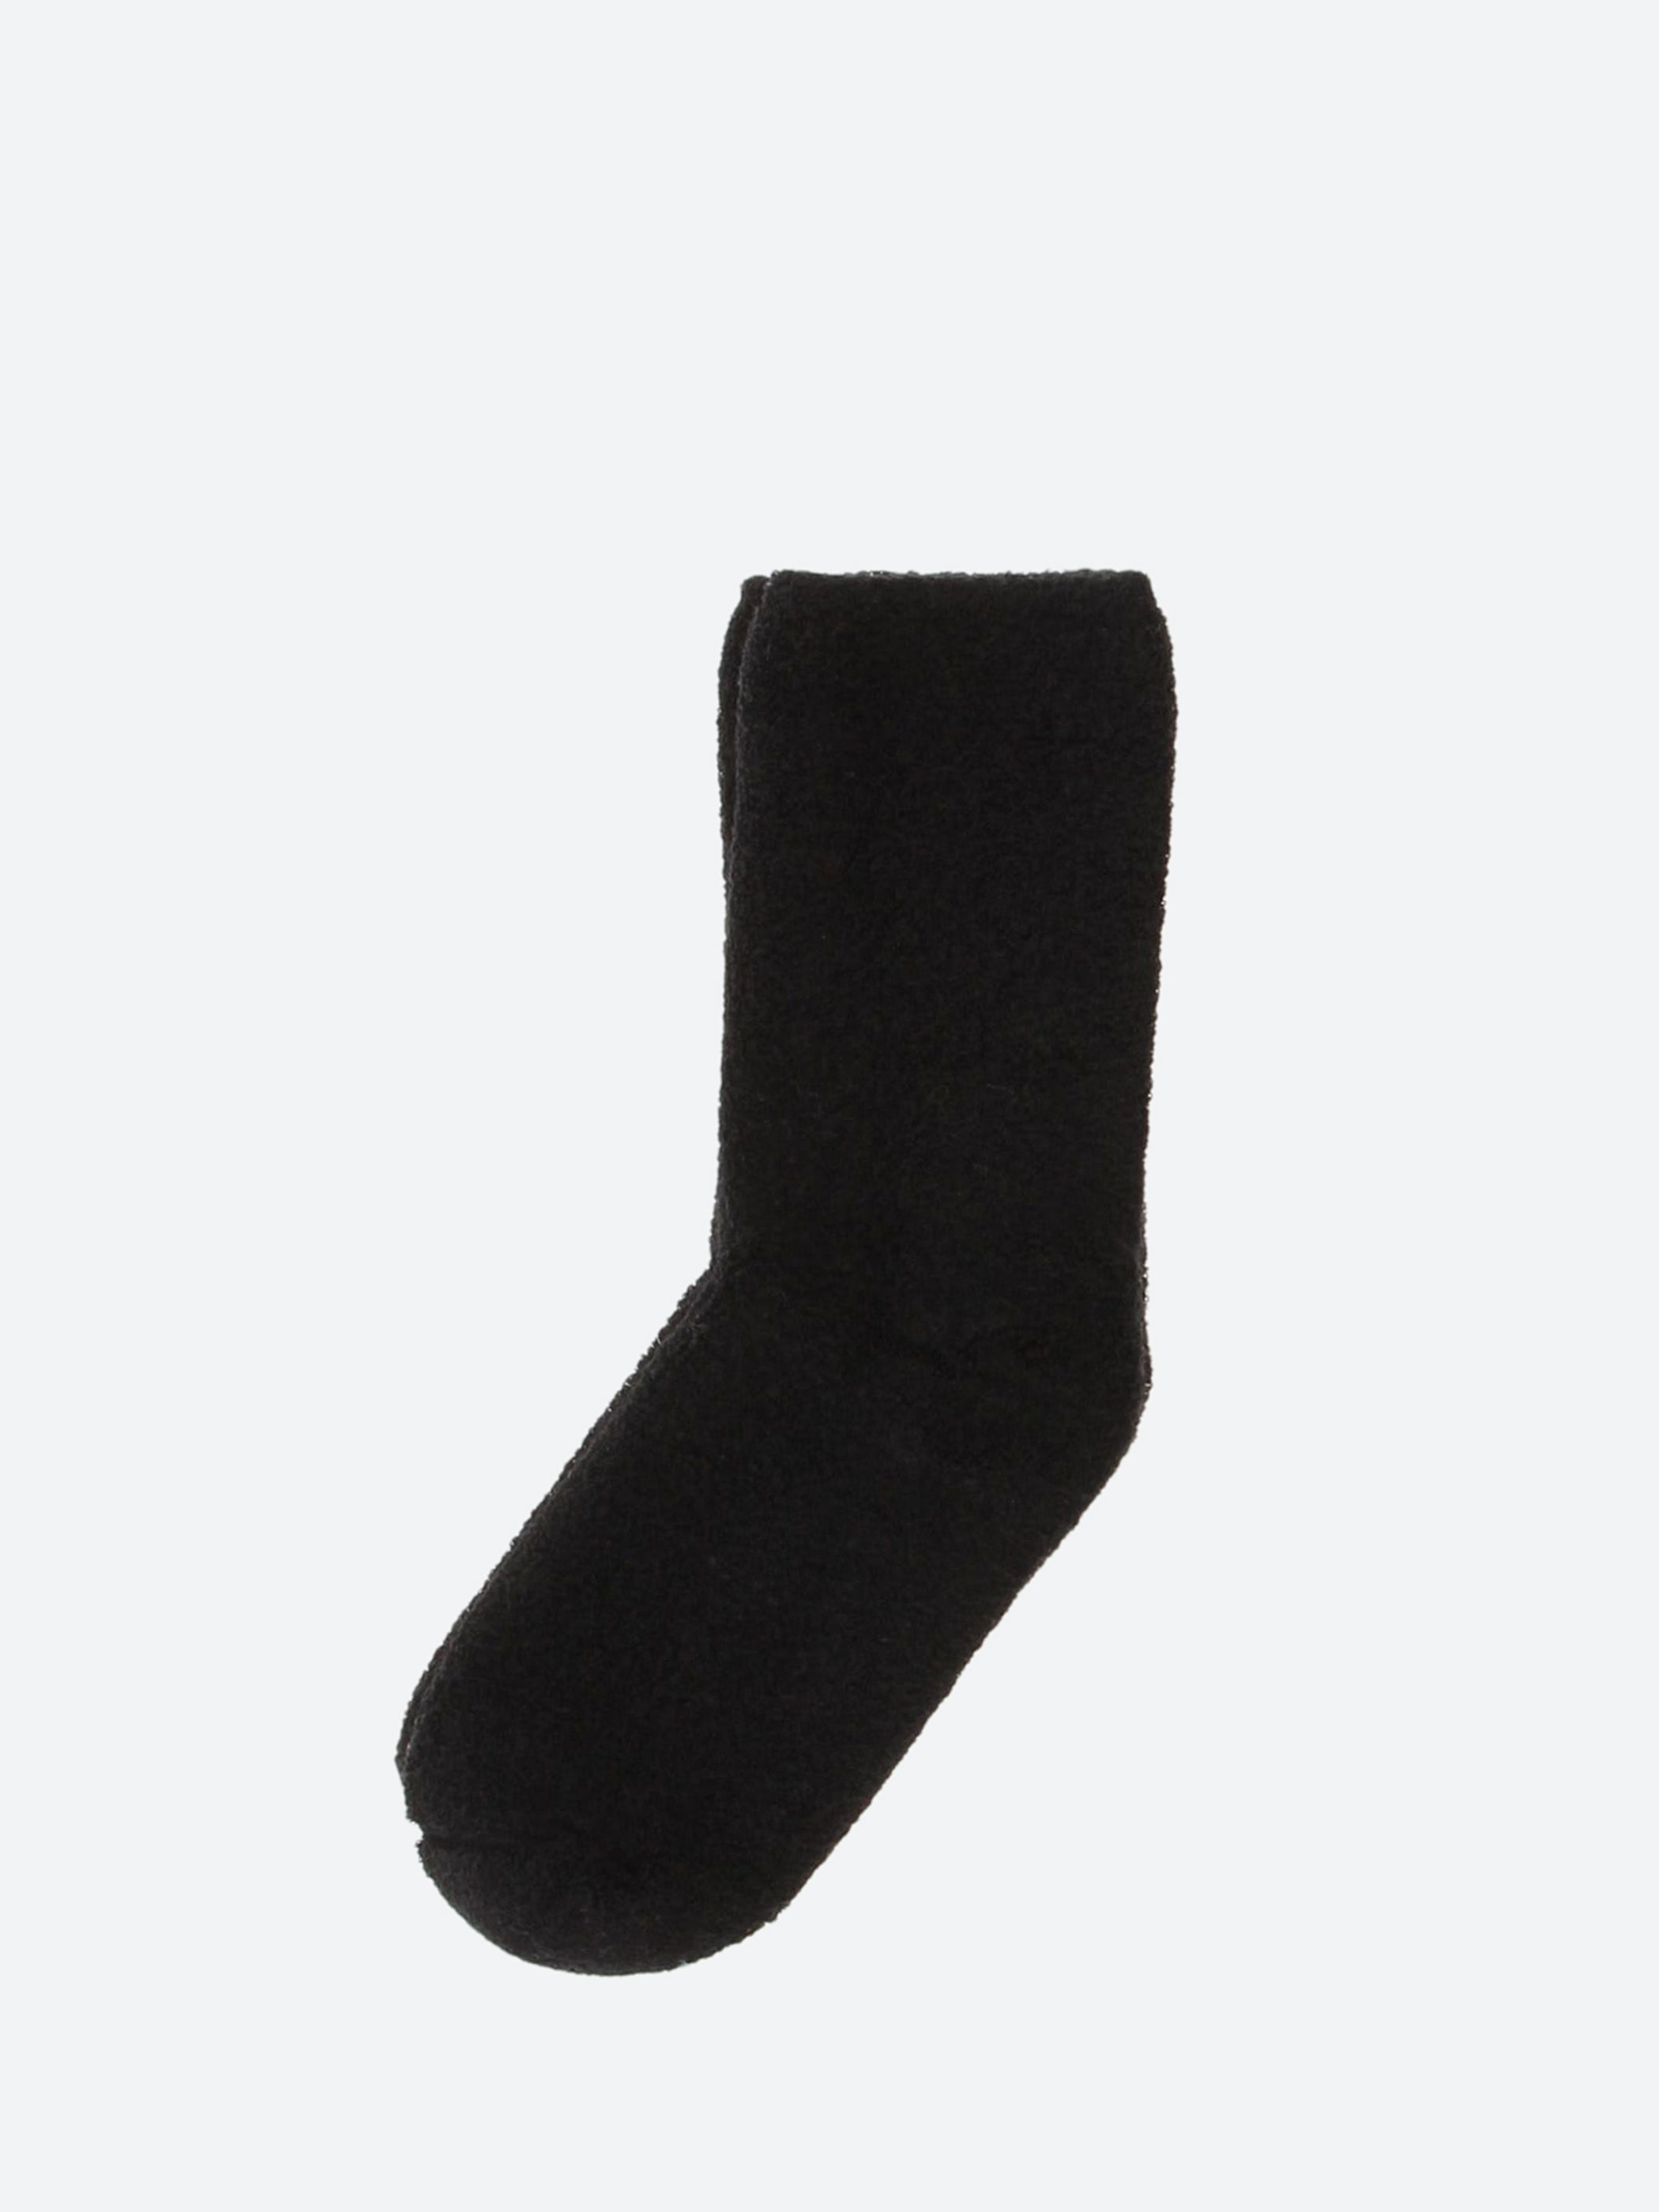 Buckle Overankle Socks